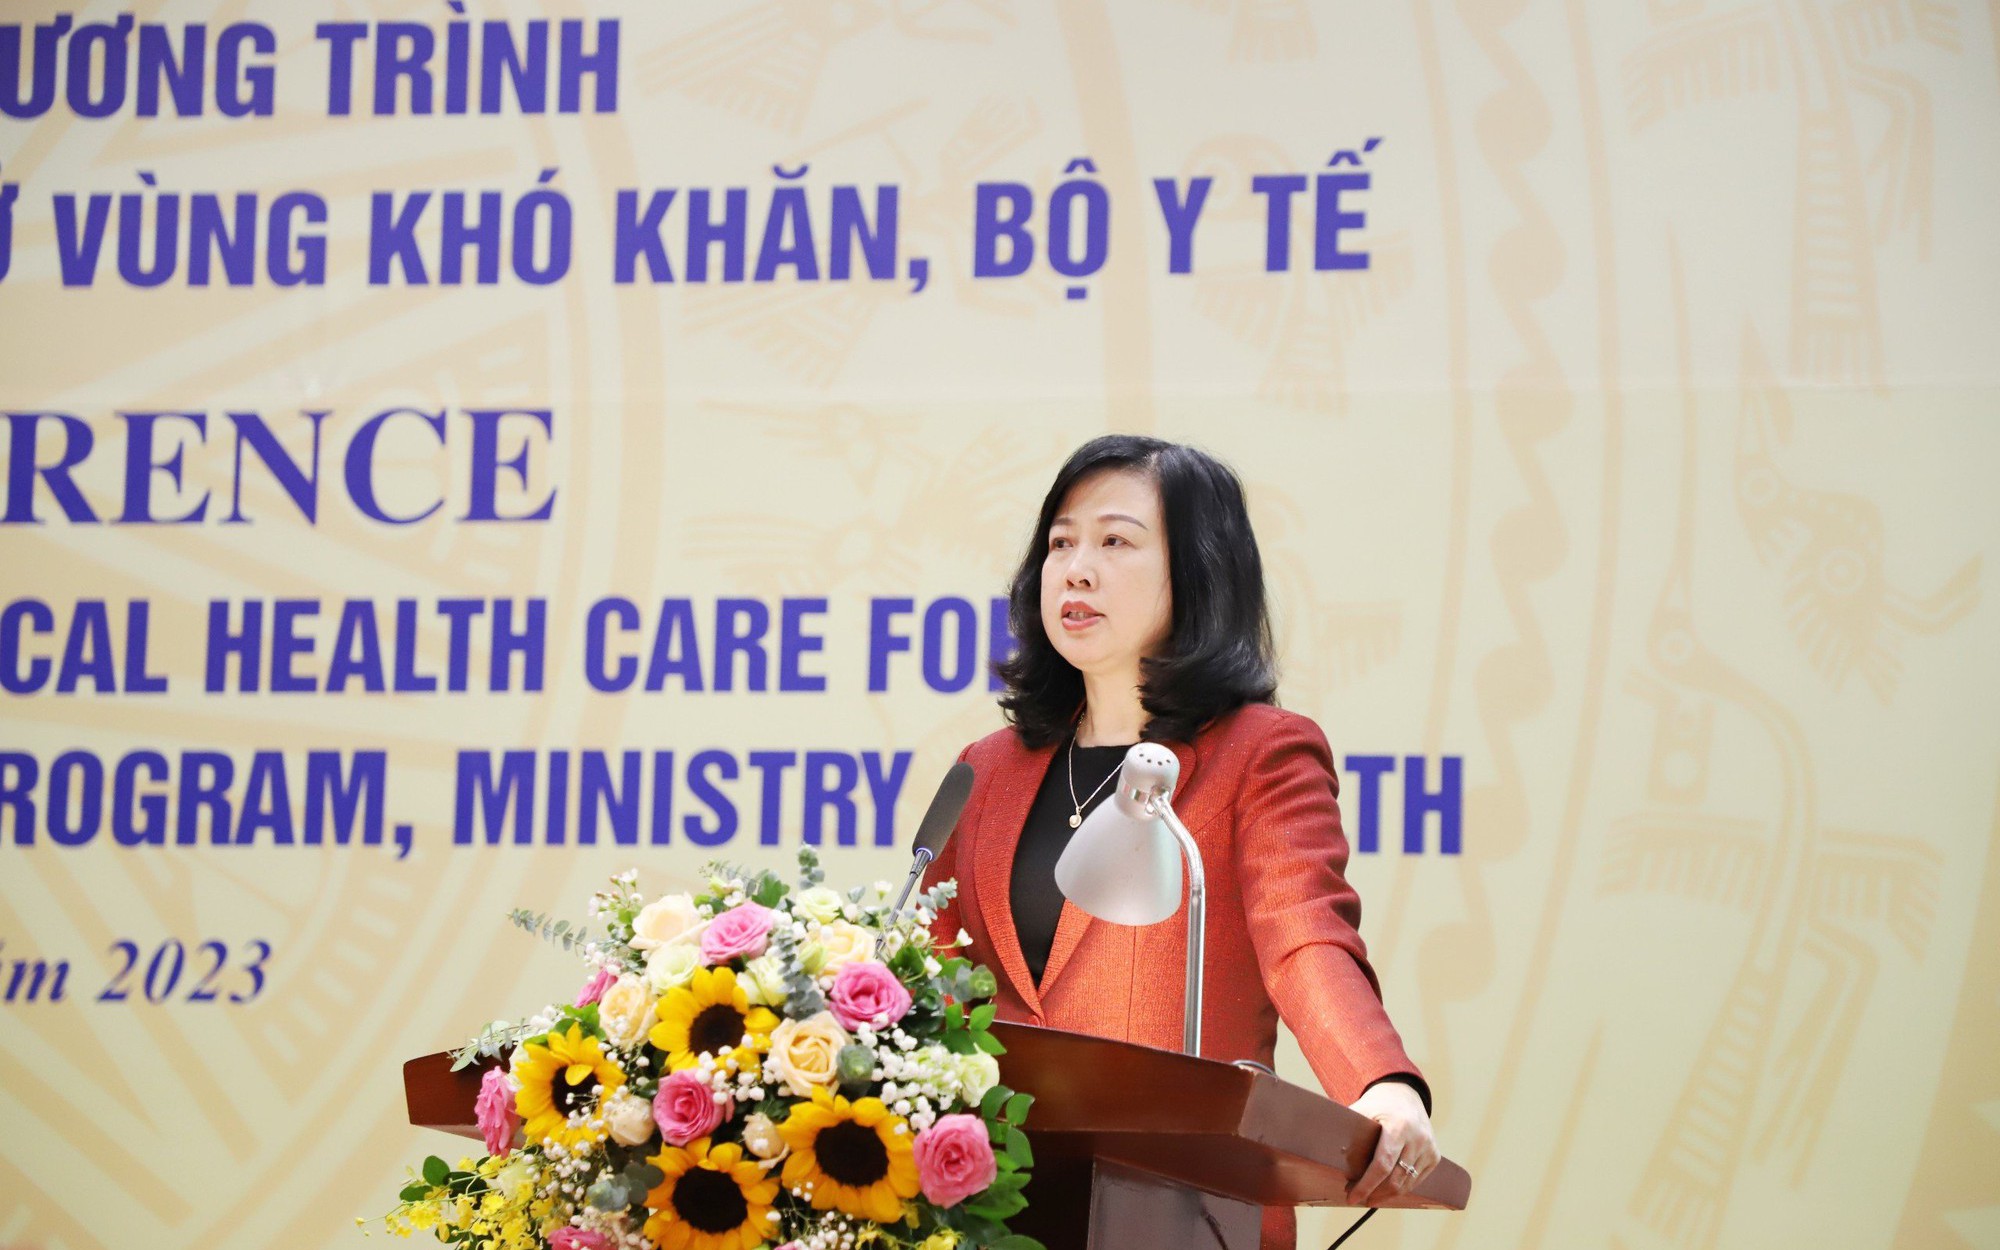 Bộ trưởng Bộ Y tế: Thêm nguồn lực để y tế cơ sở làm tốt hơn công tác chăm sóc sức khỏe ban đầu